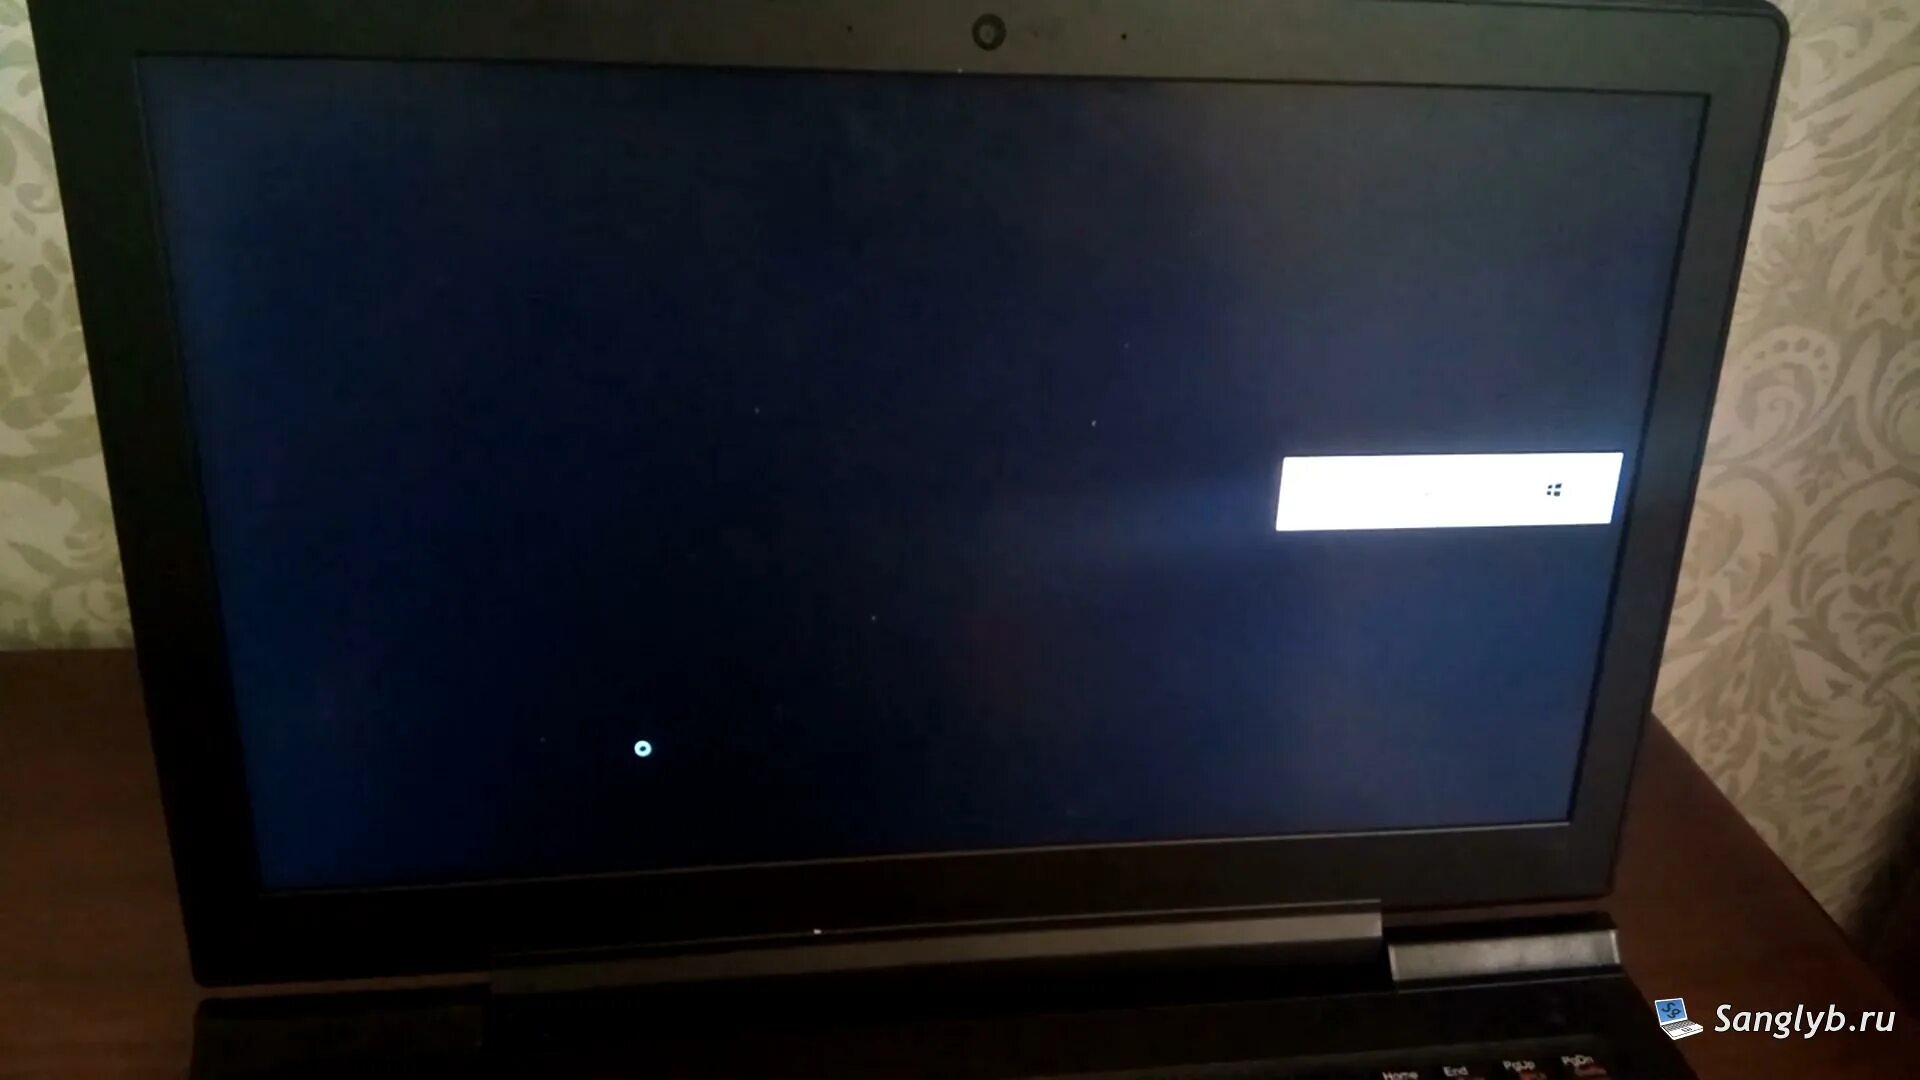 При запуске героев 6 черный экран. Чёрный экран при включении ноутбука. Герои м6 черный экран. Герои меча и магии 6 черный экран при запуске Windows 10. Белый экран черный экран.